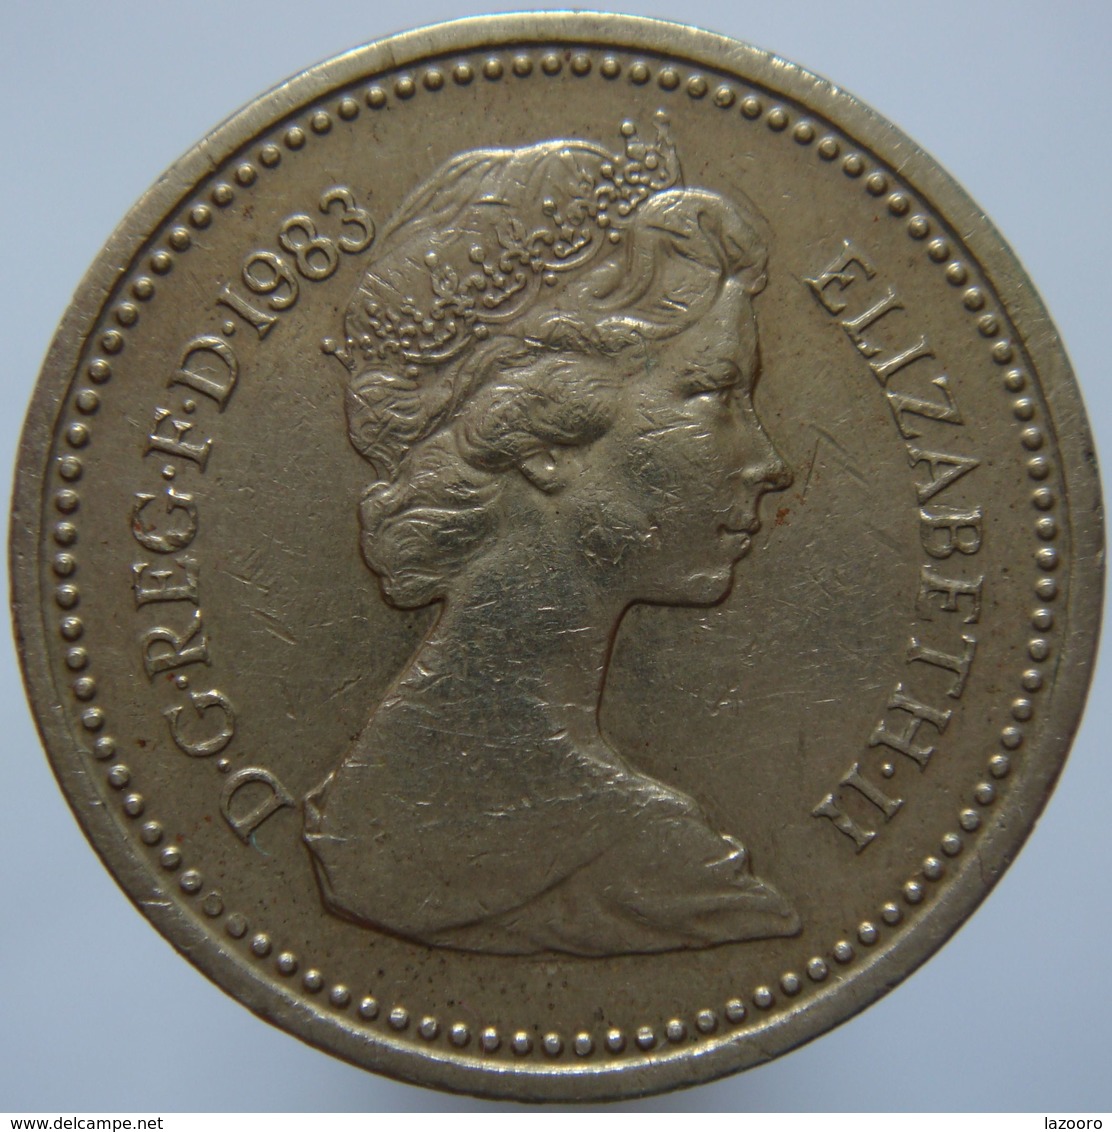 Great Britain 1 Pound 1983 F / VF - 1 Pound